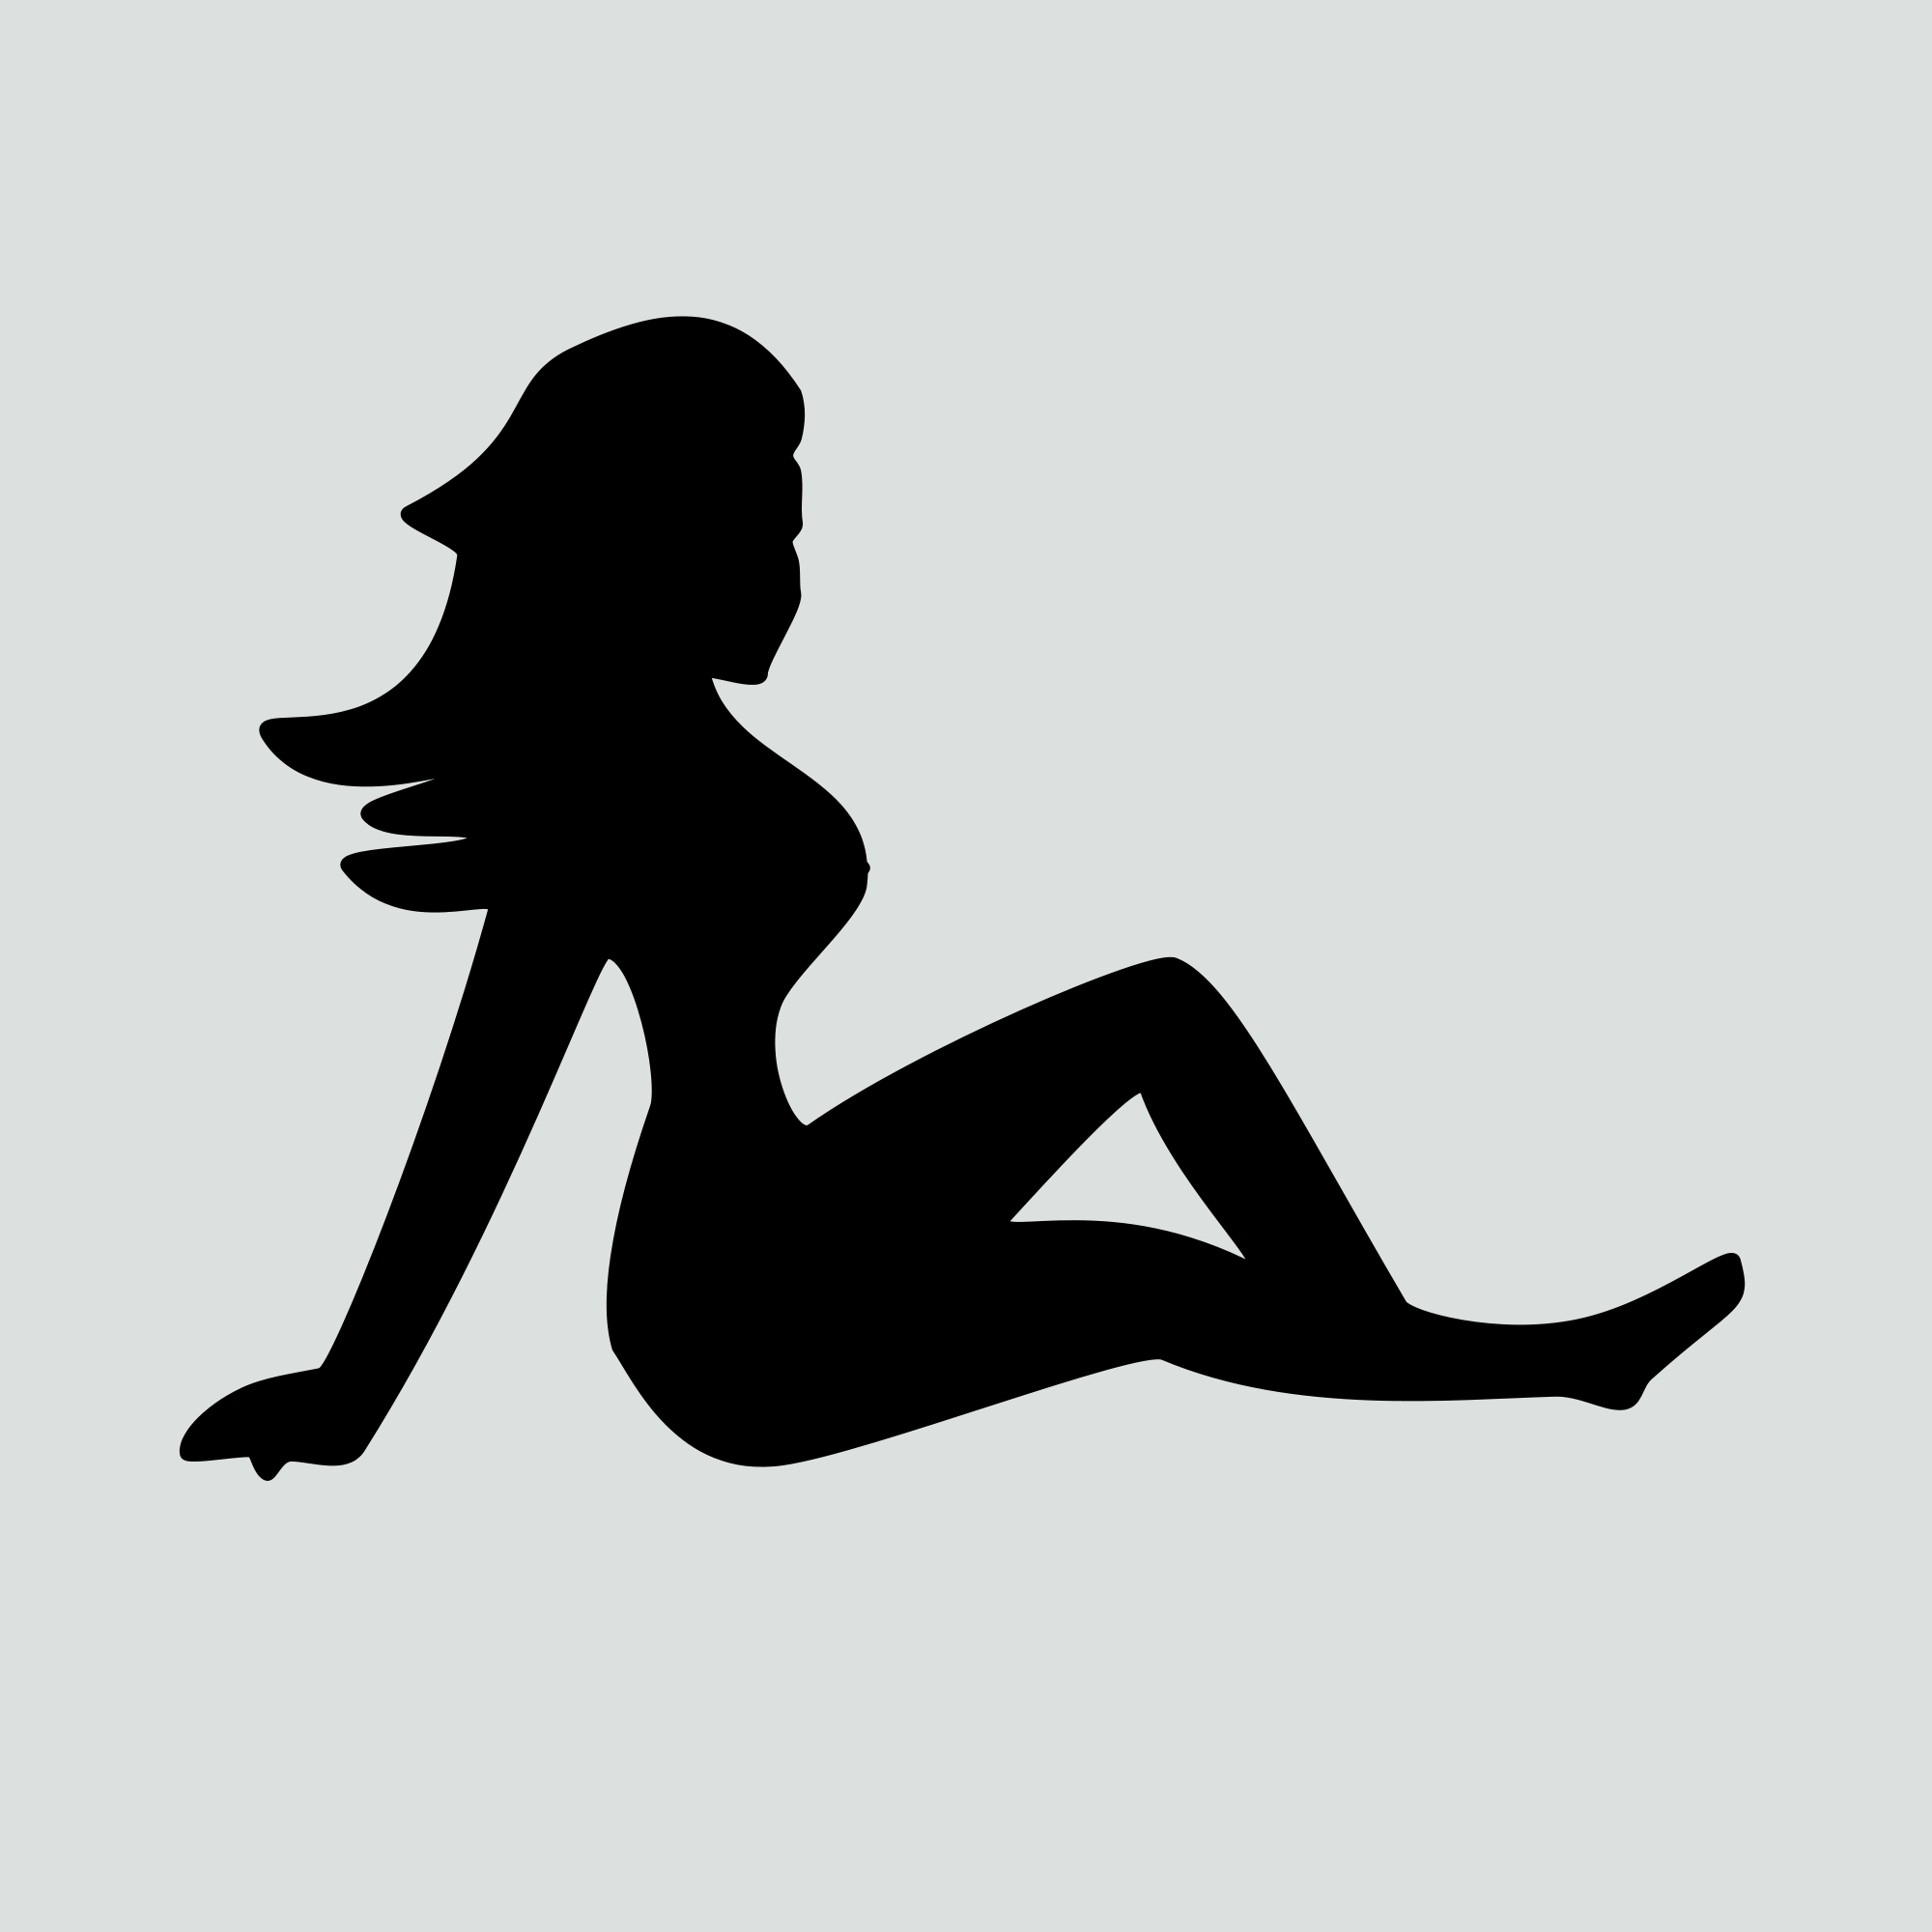 Trucker Girl Logo - Mudflap girl